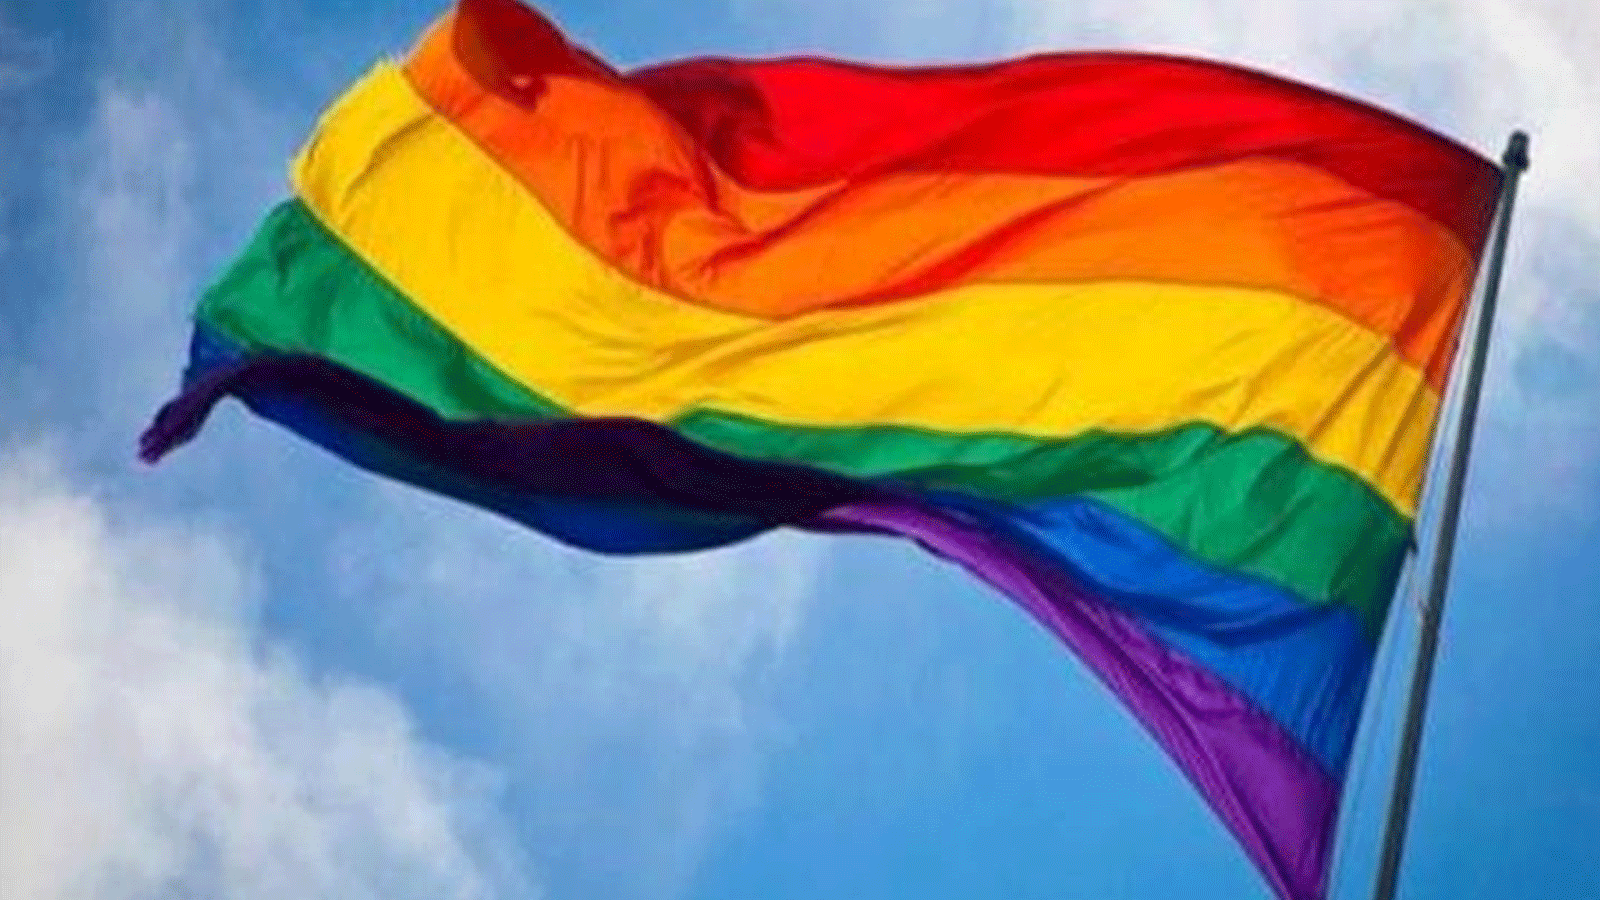 علم المثليين الذي يرفعونه خلال تجمعاتهم واحتفالاتهم (تويتر)